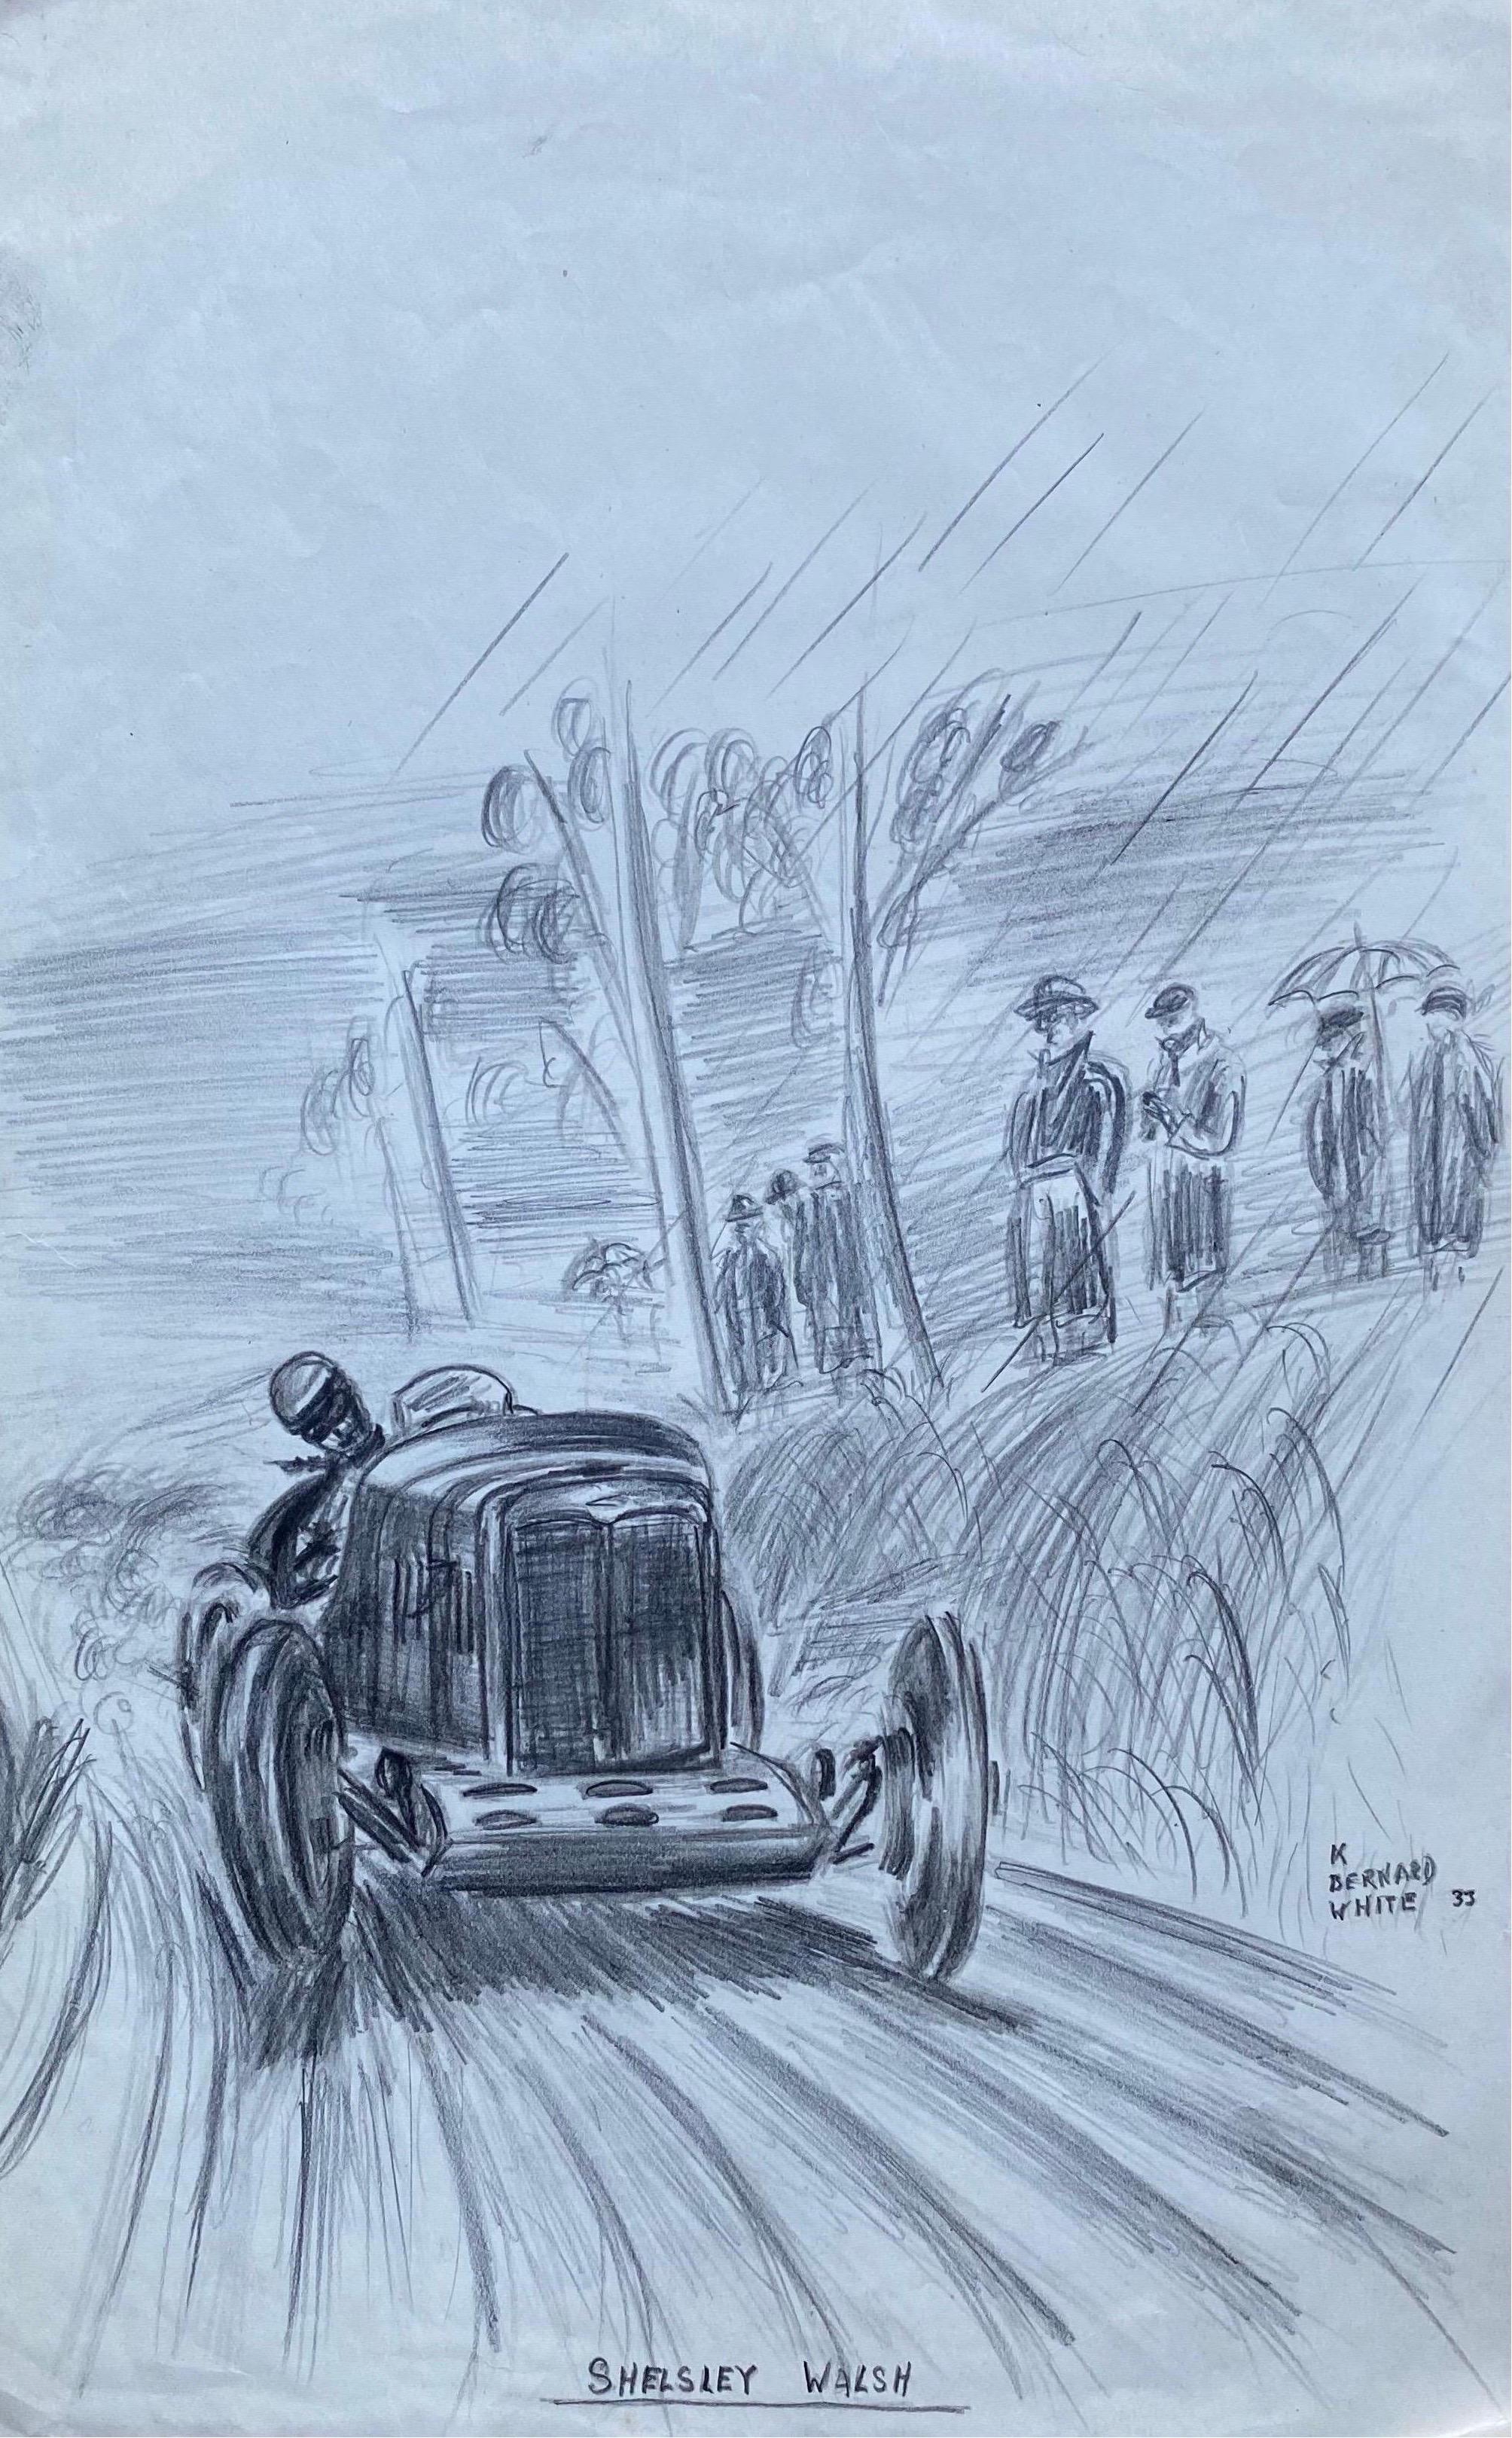 K. B. White Landscape Art - Original 1930's Vintage Motor Car Racing Original Drawing Signed Dated